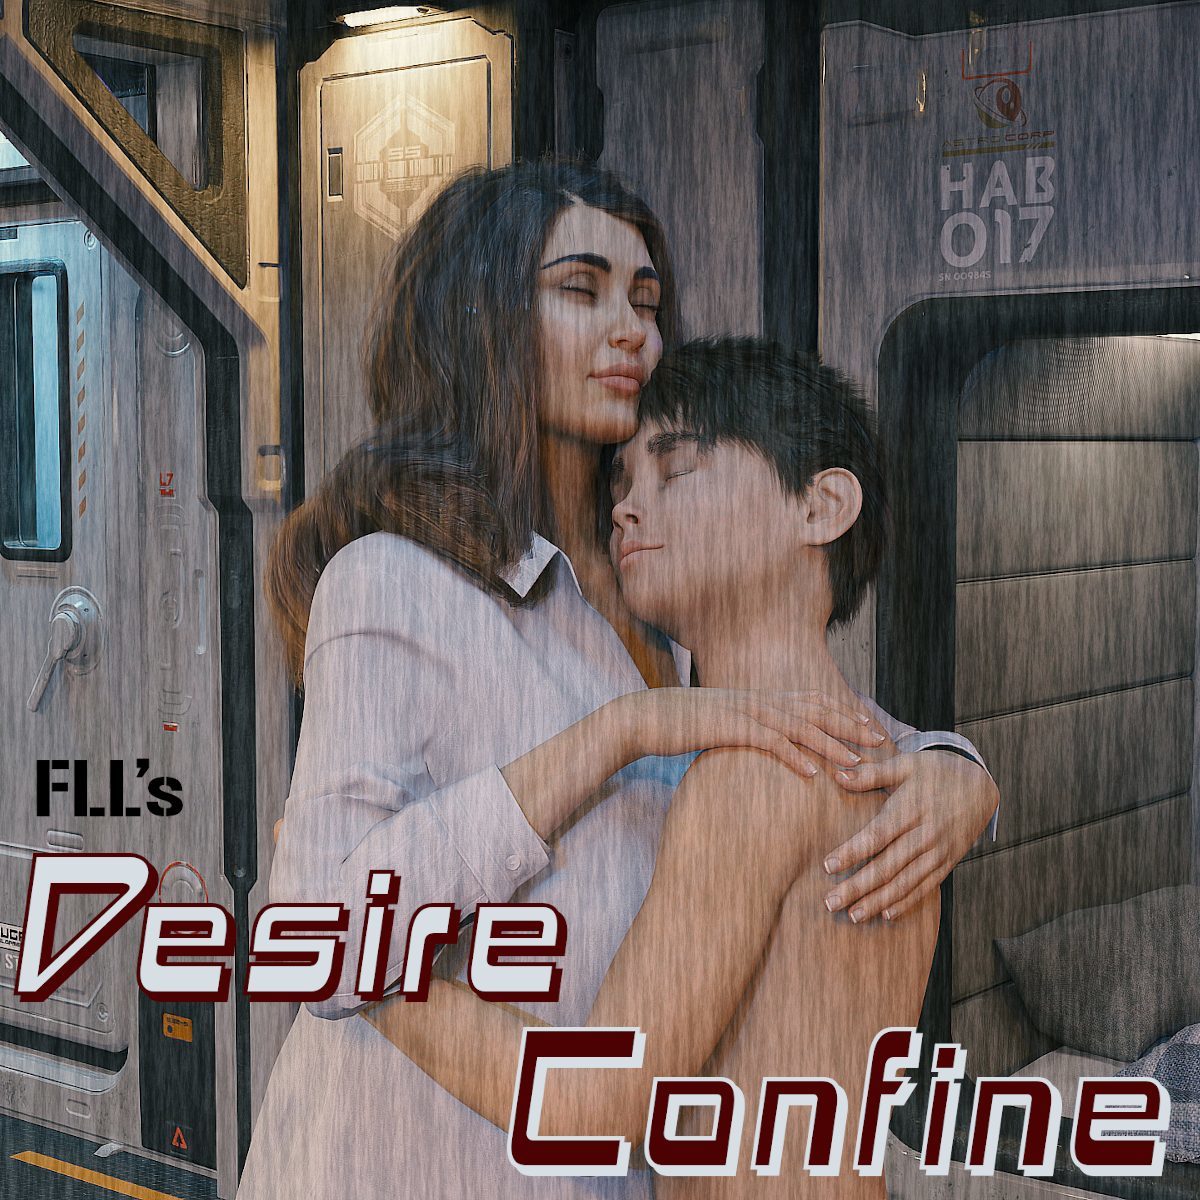 [Comix] Desire Confine (FLL, f95zone) [3DCG, - 1.89 GB